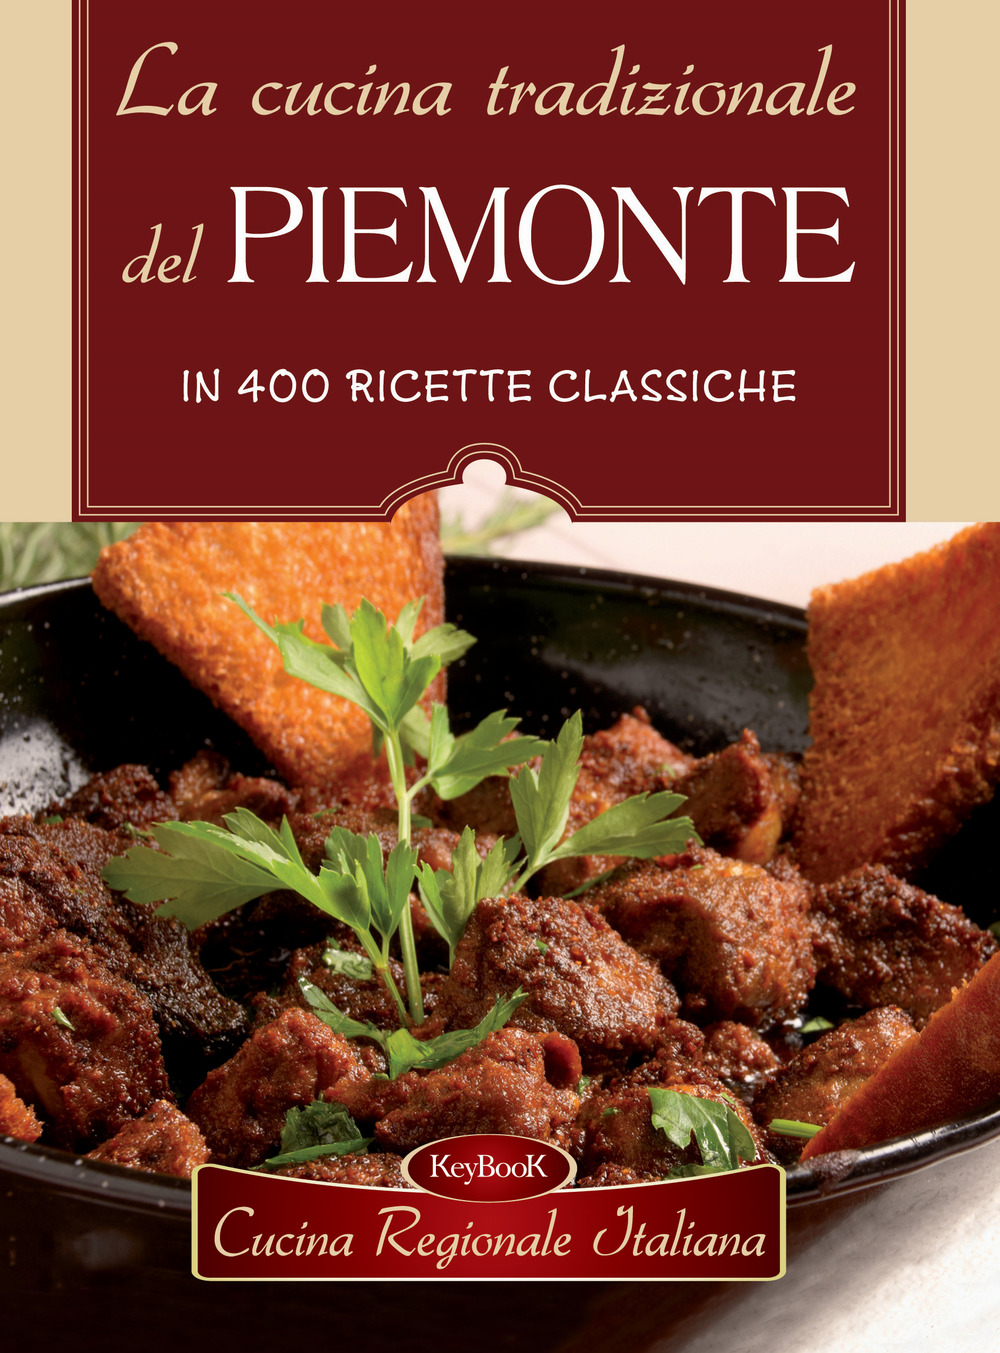 La cucina tradizionale del Piemonte